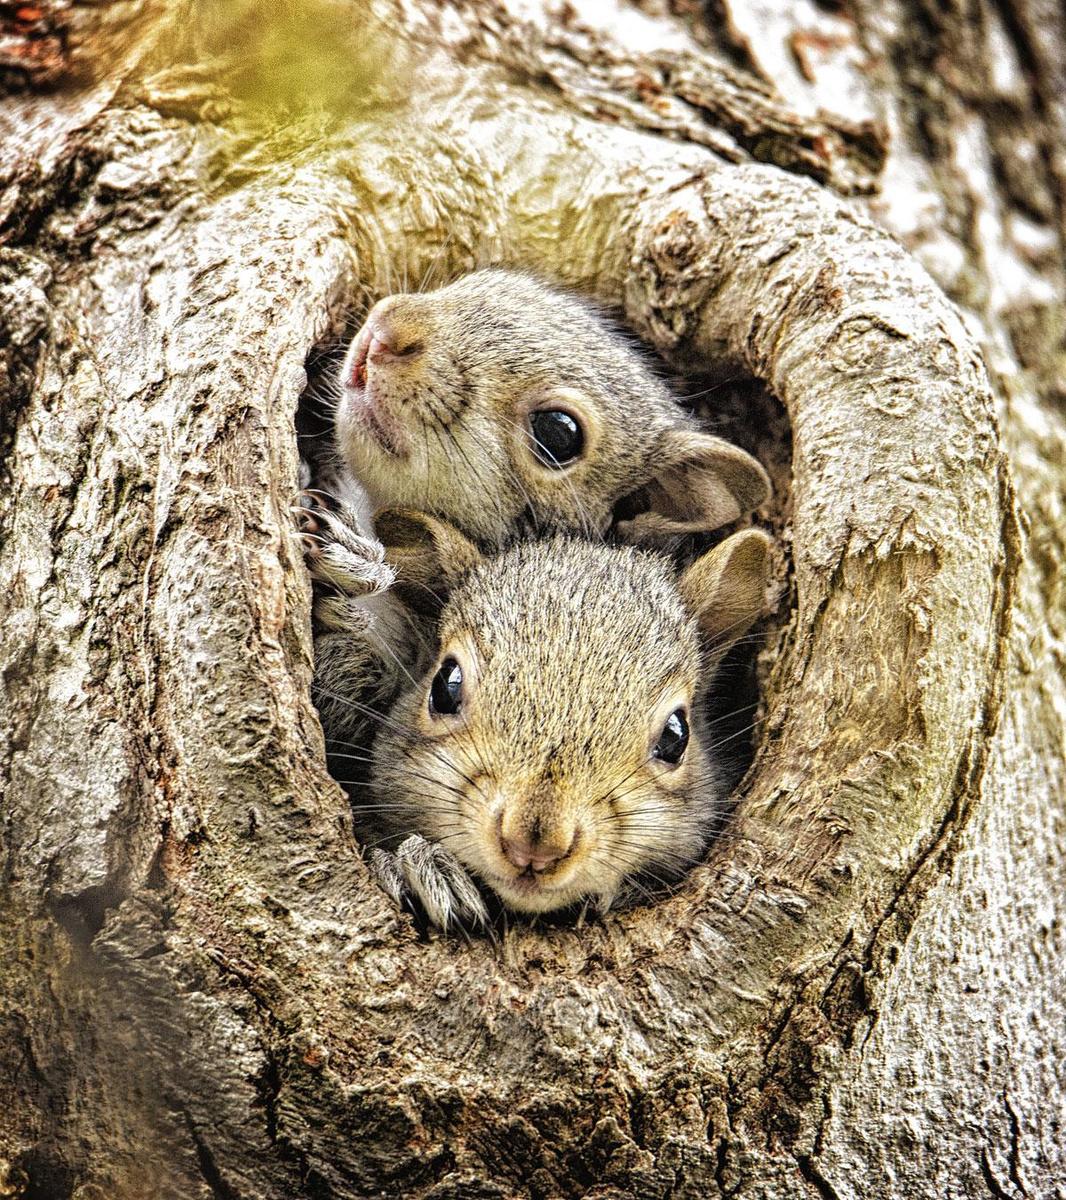 Nesten bouwen daar doet de eekhoorn niet aan. De bomen hebben altijd wel een gaatje vrij om er een knus onderkomen van te maken.